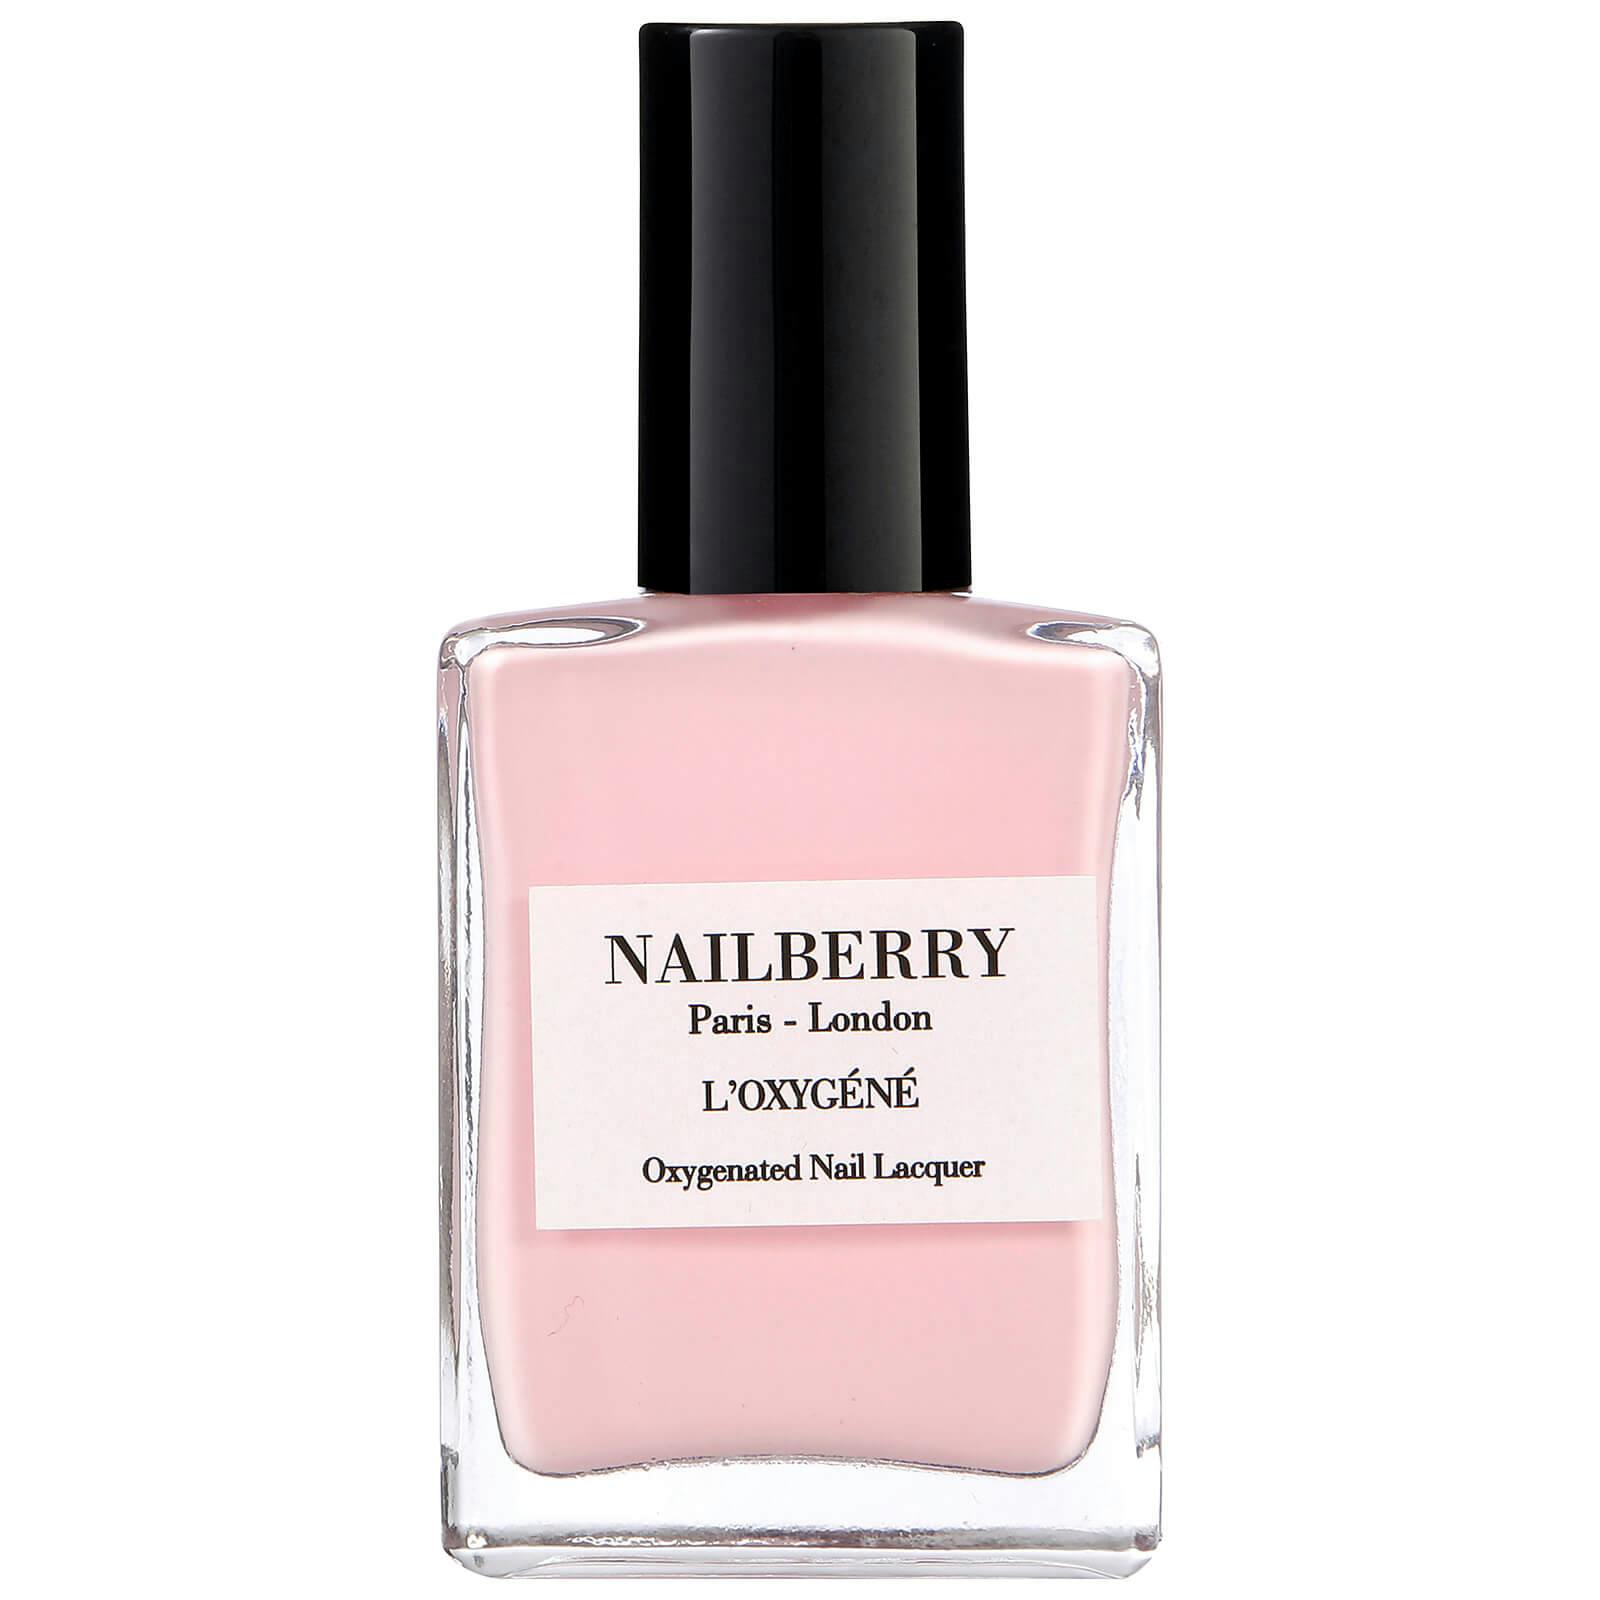 Nailberry polish on white background